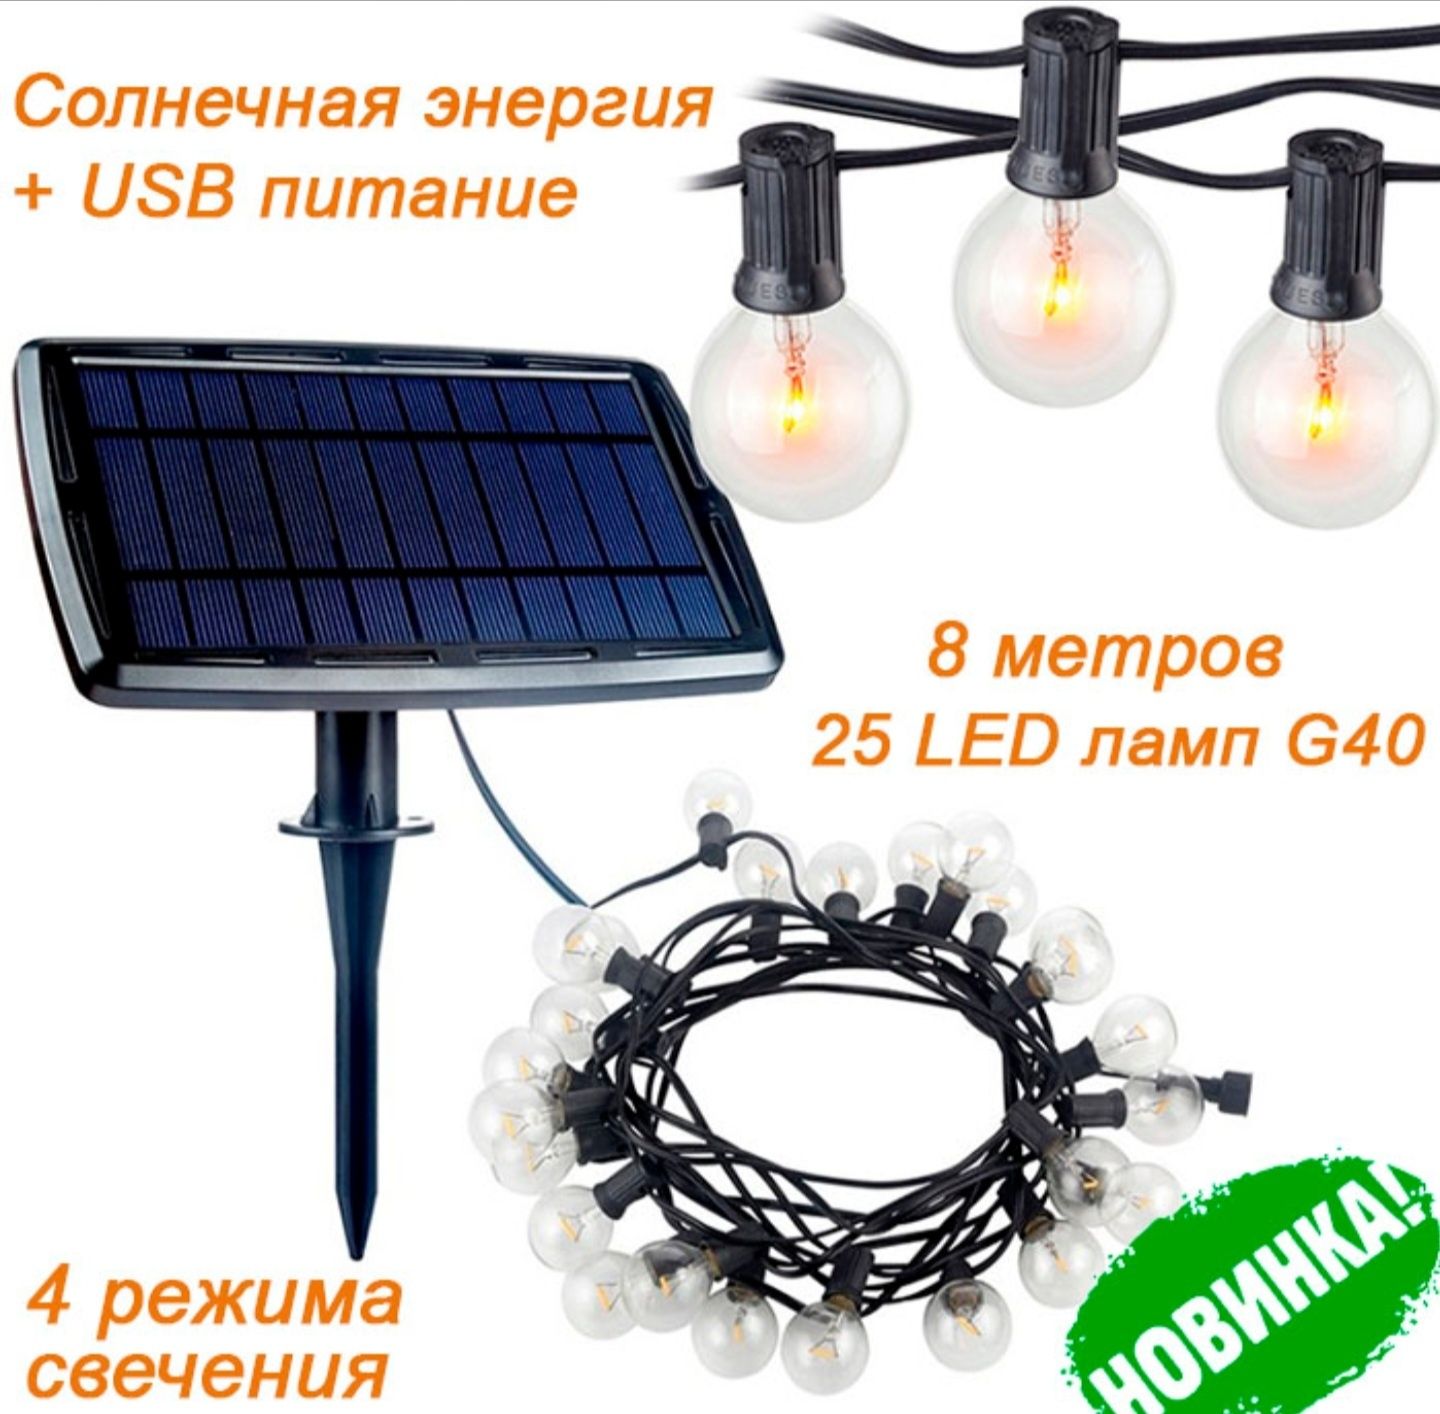 Светодиодная ретро-гирлянда LED-G40-1, на солнечной батарее + USB, 25